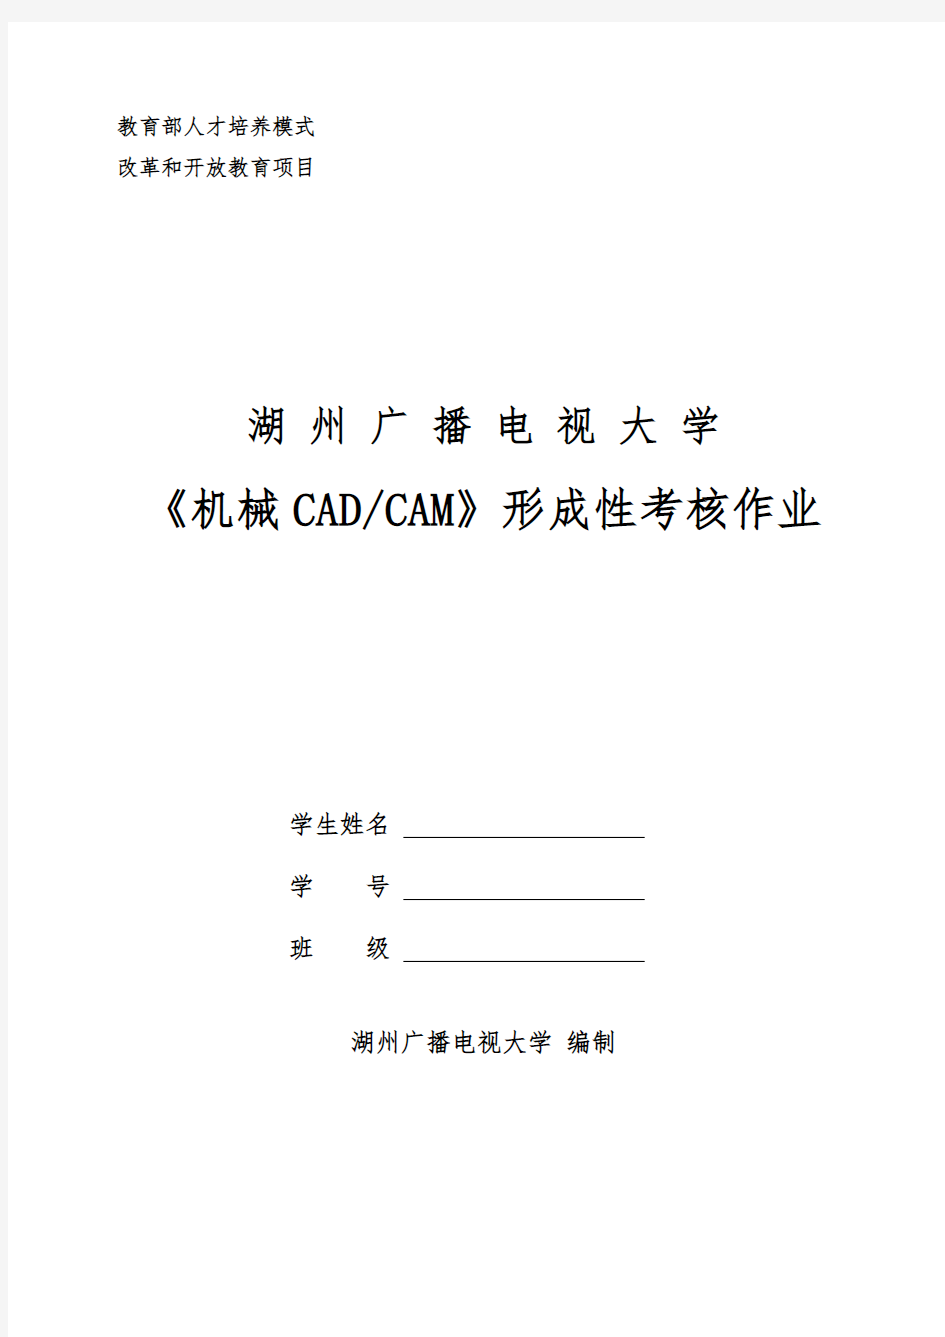 机械CADCAM形成性考核作业春机械设计制造和自动化机电本科